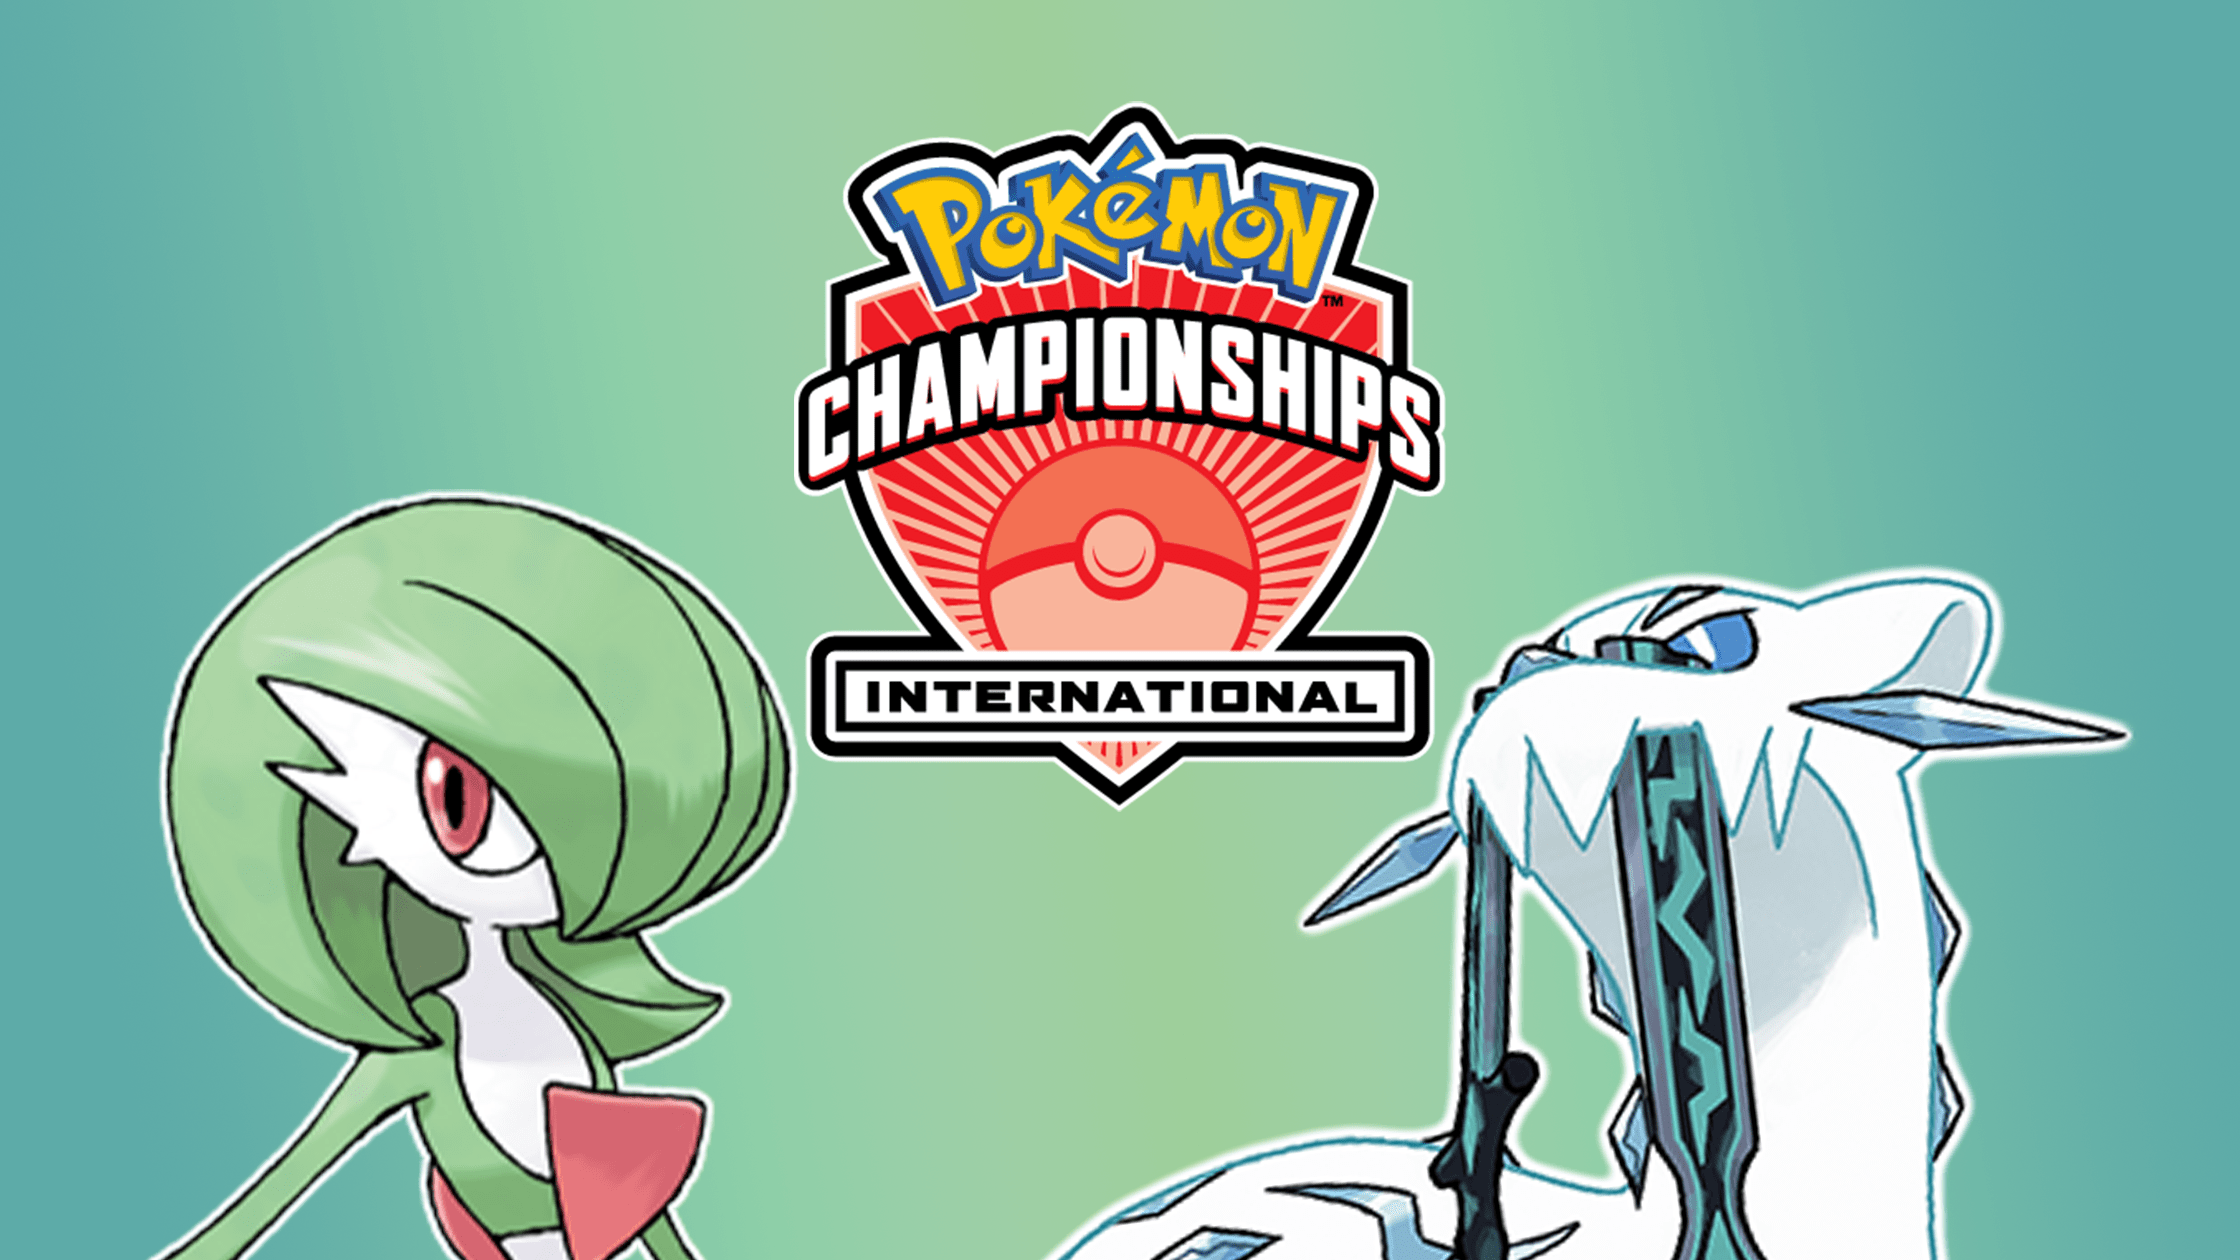 Carte Pokemon North America International Championship logo con Gardevoir e Chien Pao sfondo verde